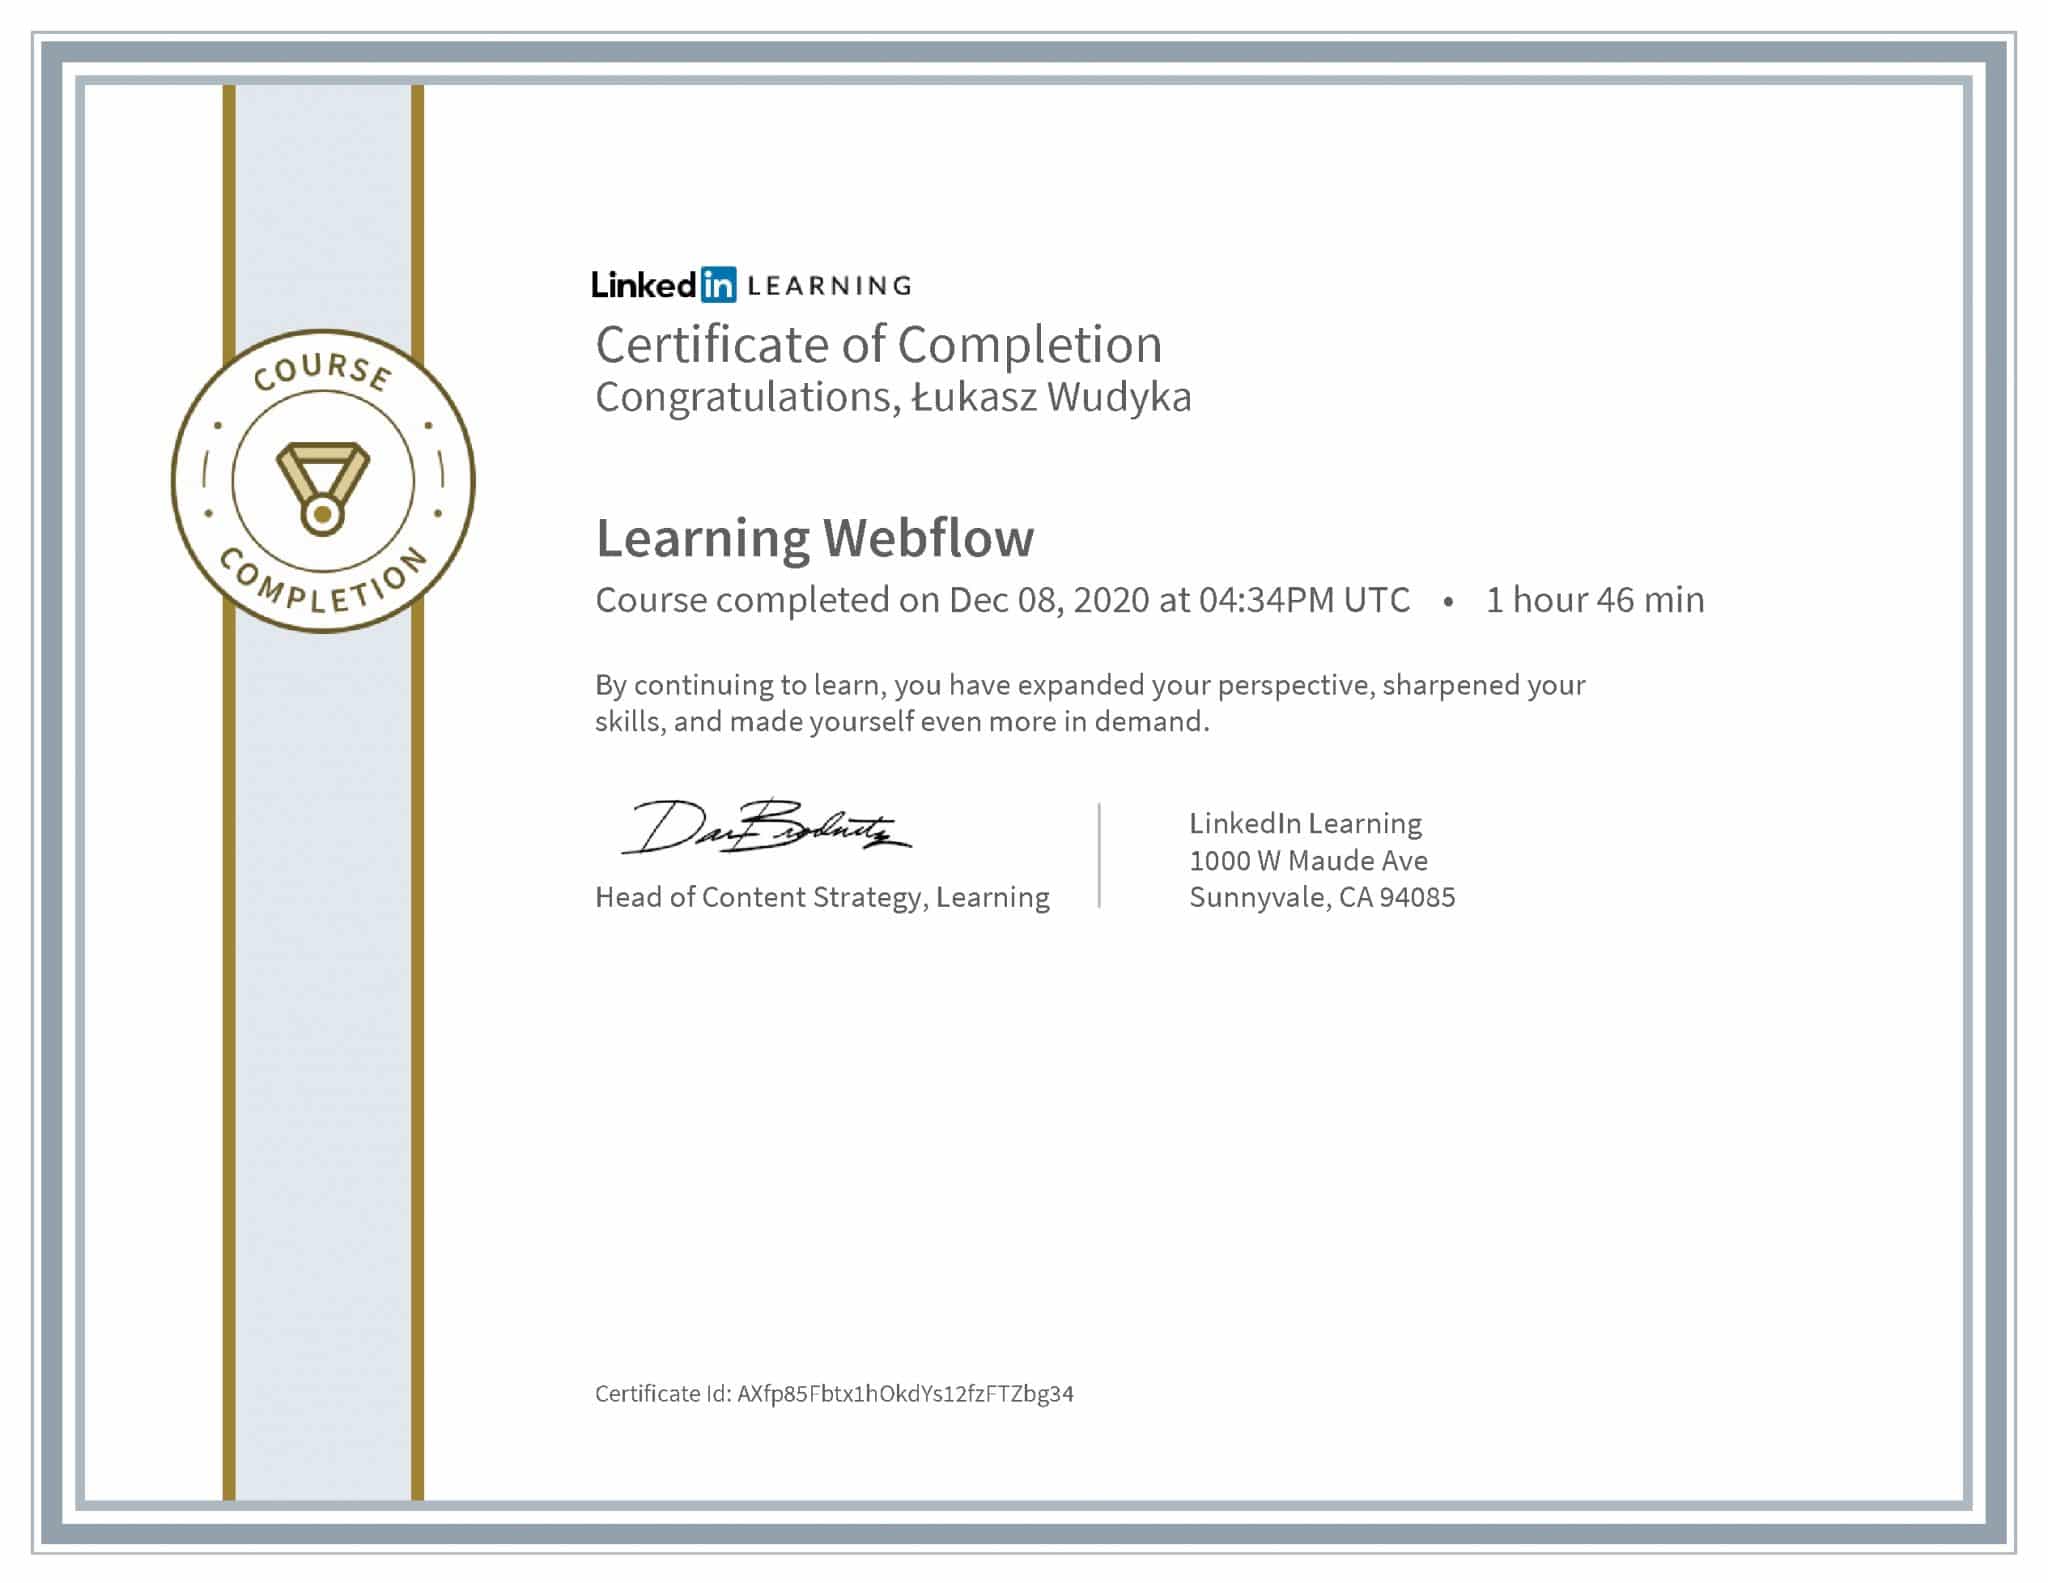 Łukasz Wudyka certyfikat LinkedIn Learning Webflow